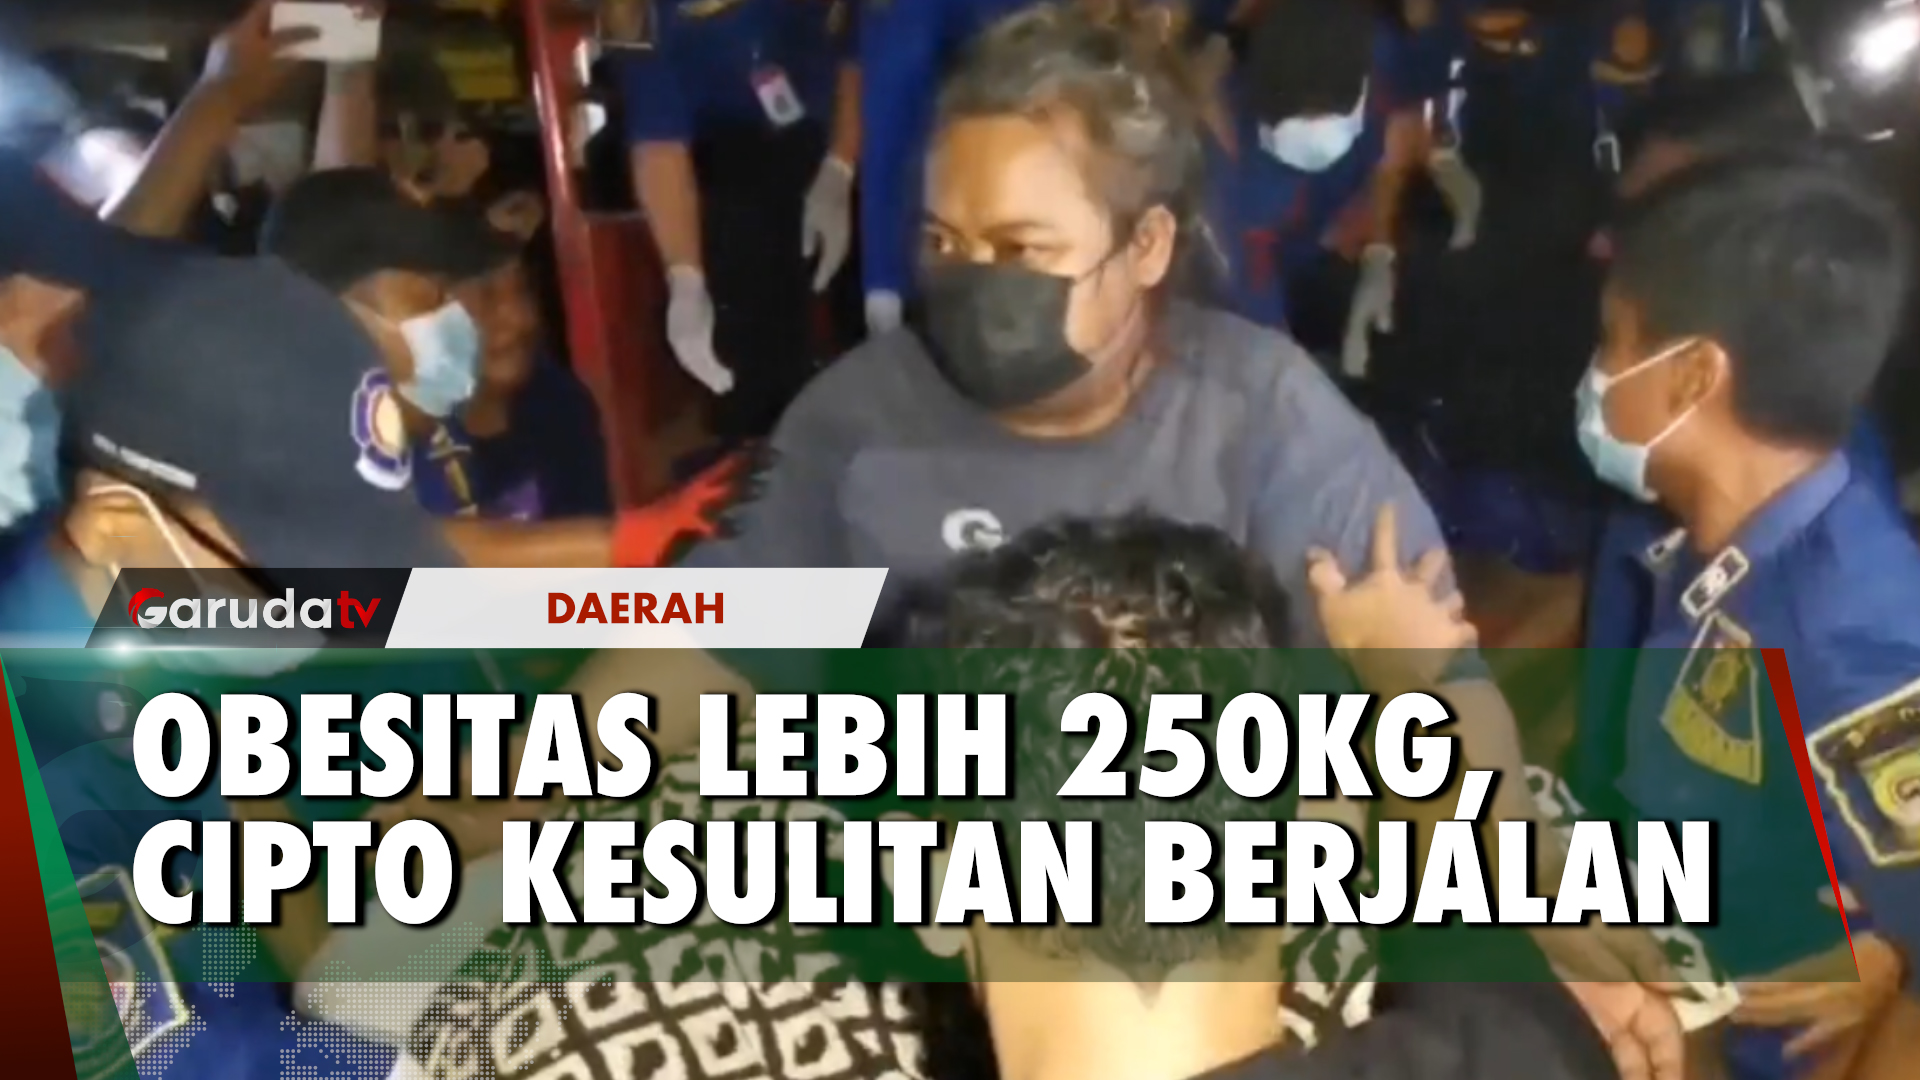 Di Tangerang Lagi, Pria Obesitas 250Kg Dievakuasi BPBD Ke RSUD